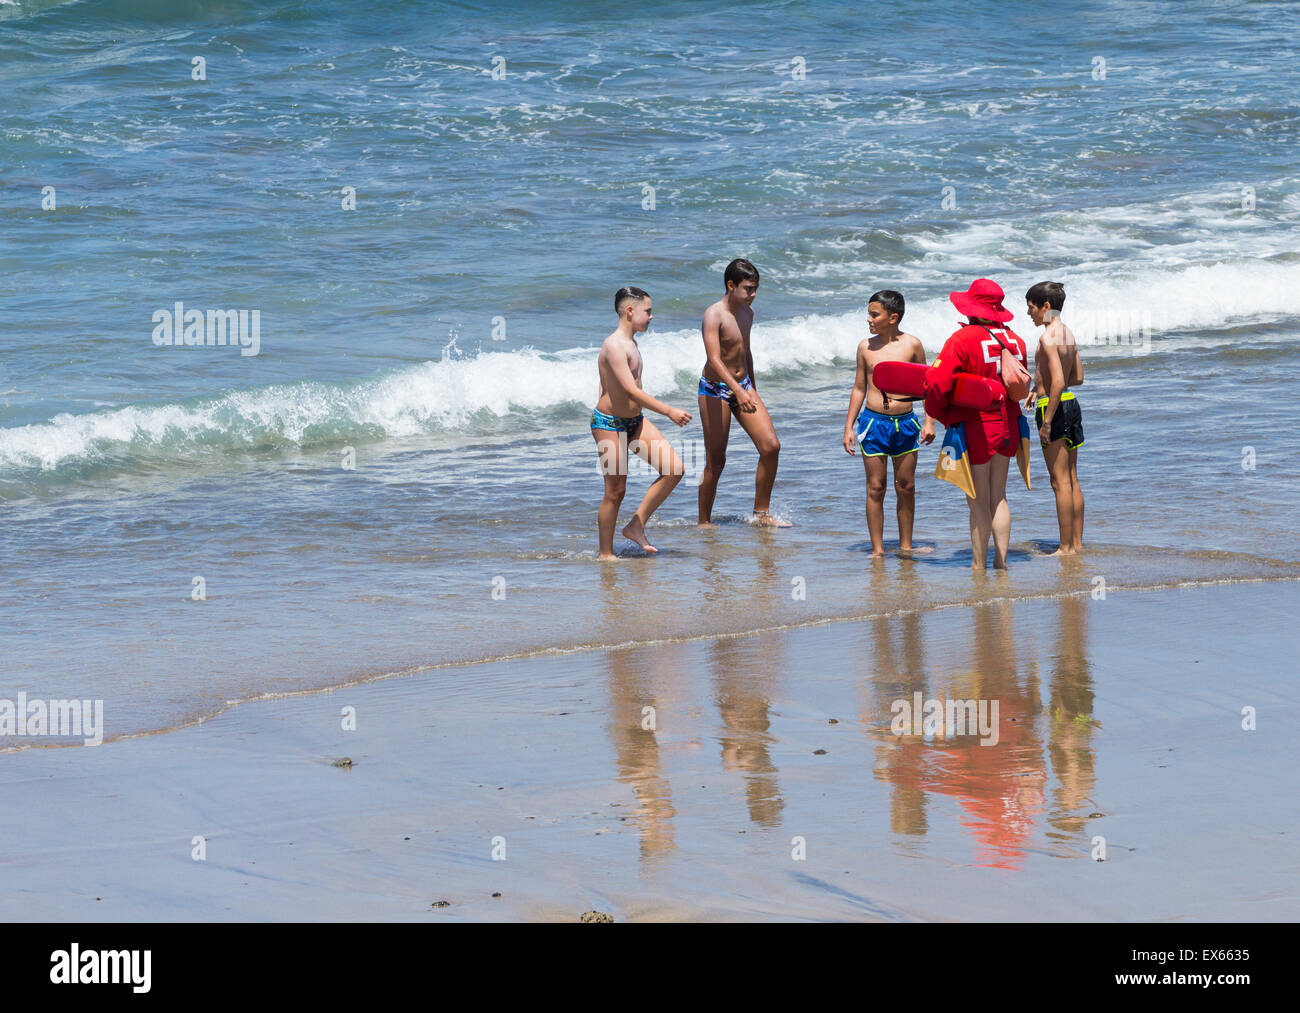 Rotes Kreuz (Cruz Roja) weiblichen Rettungsschwimmer erklärt die Gefahren des Gegenströmungen zu jungen am Strand sehr beliebt bei Surfern in Spanien Stockfoto